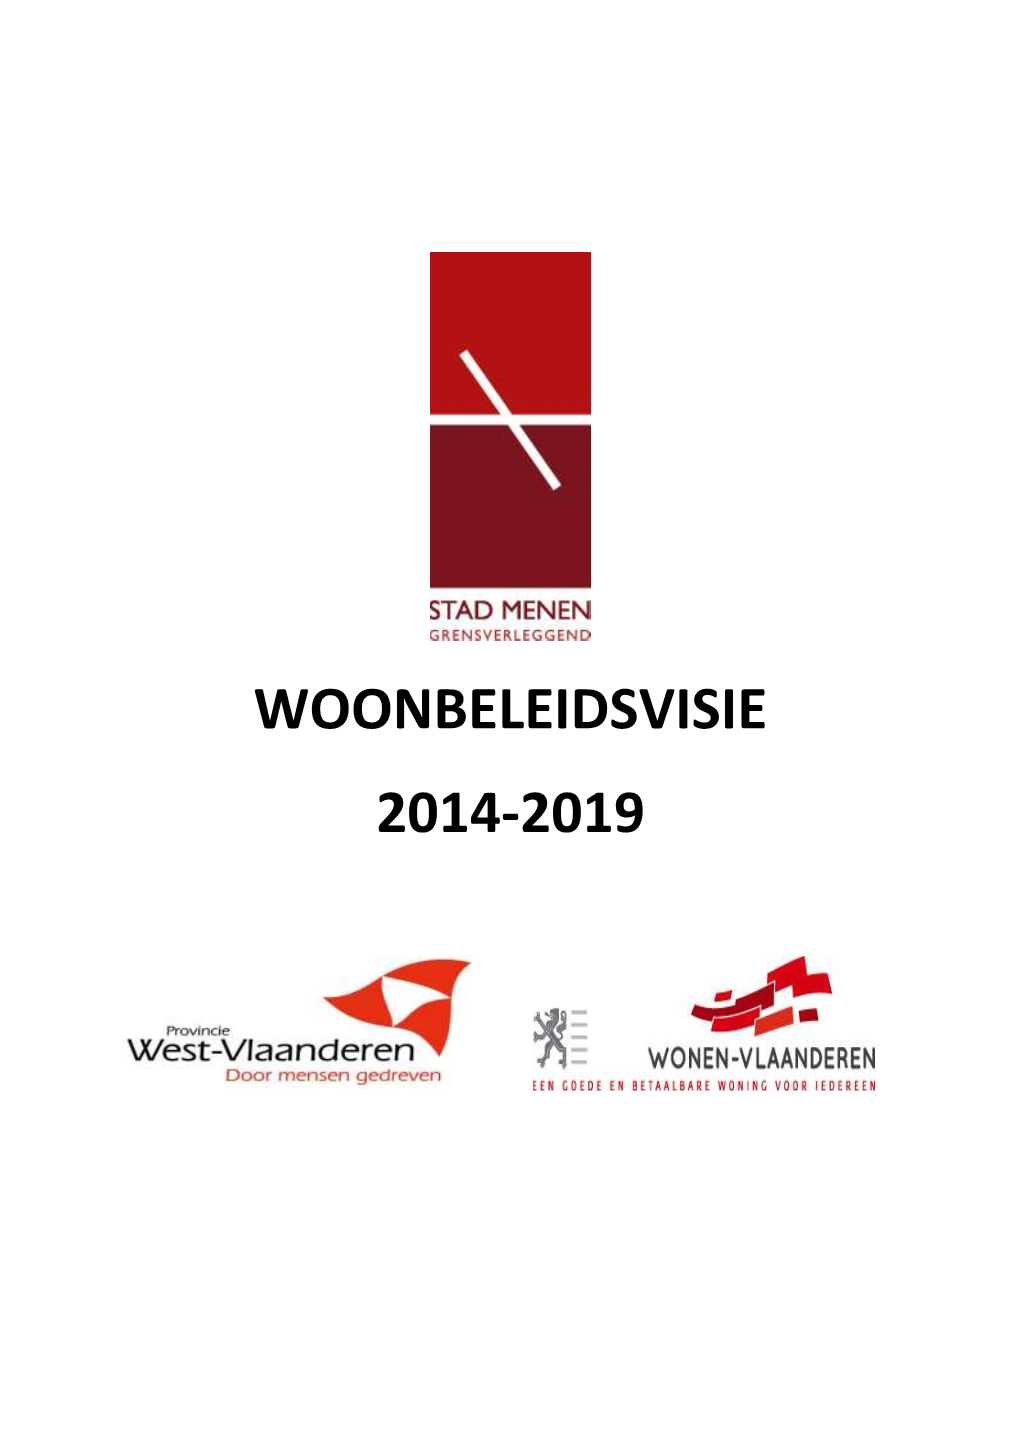 Woonbeleidsvisie 2014-2019